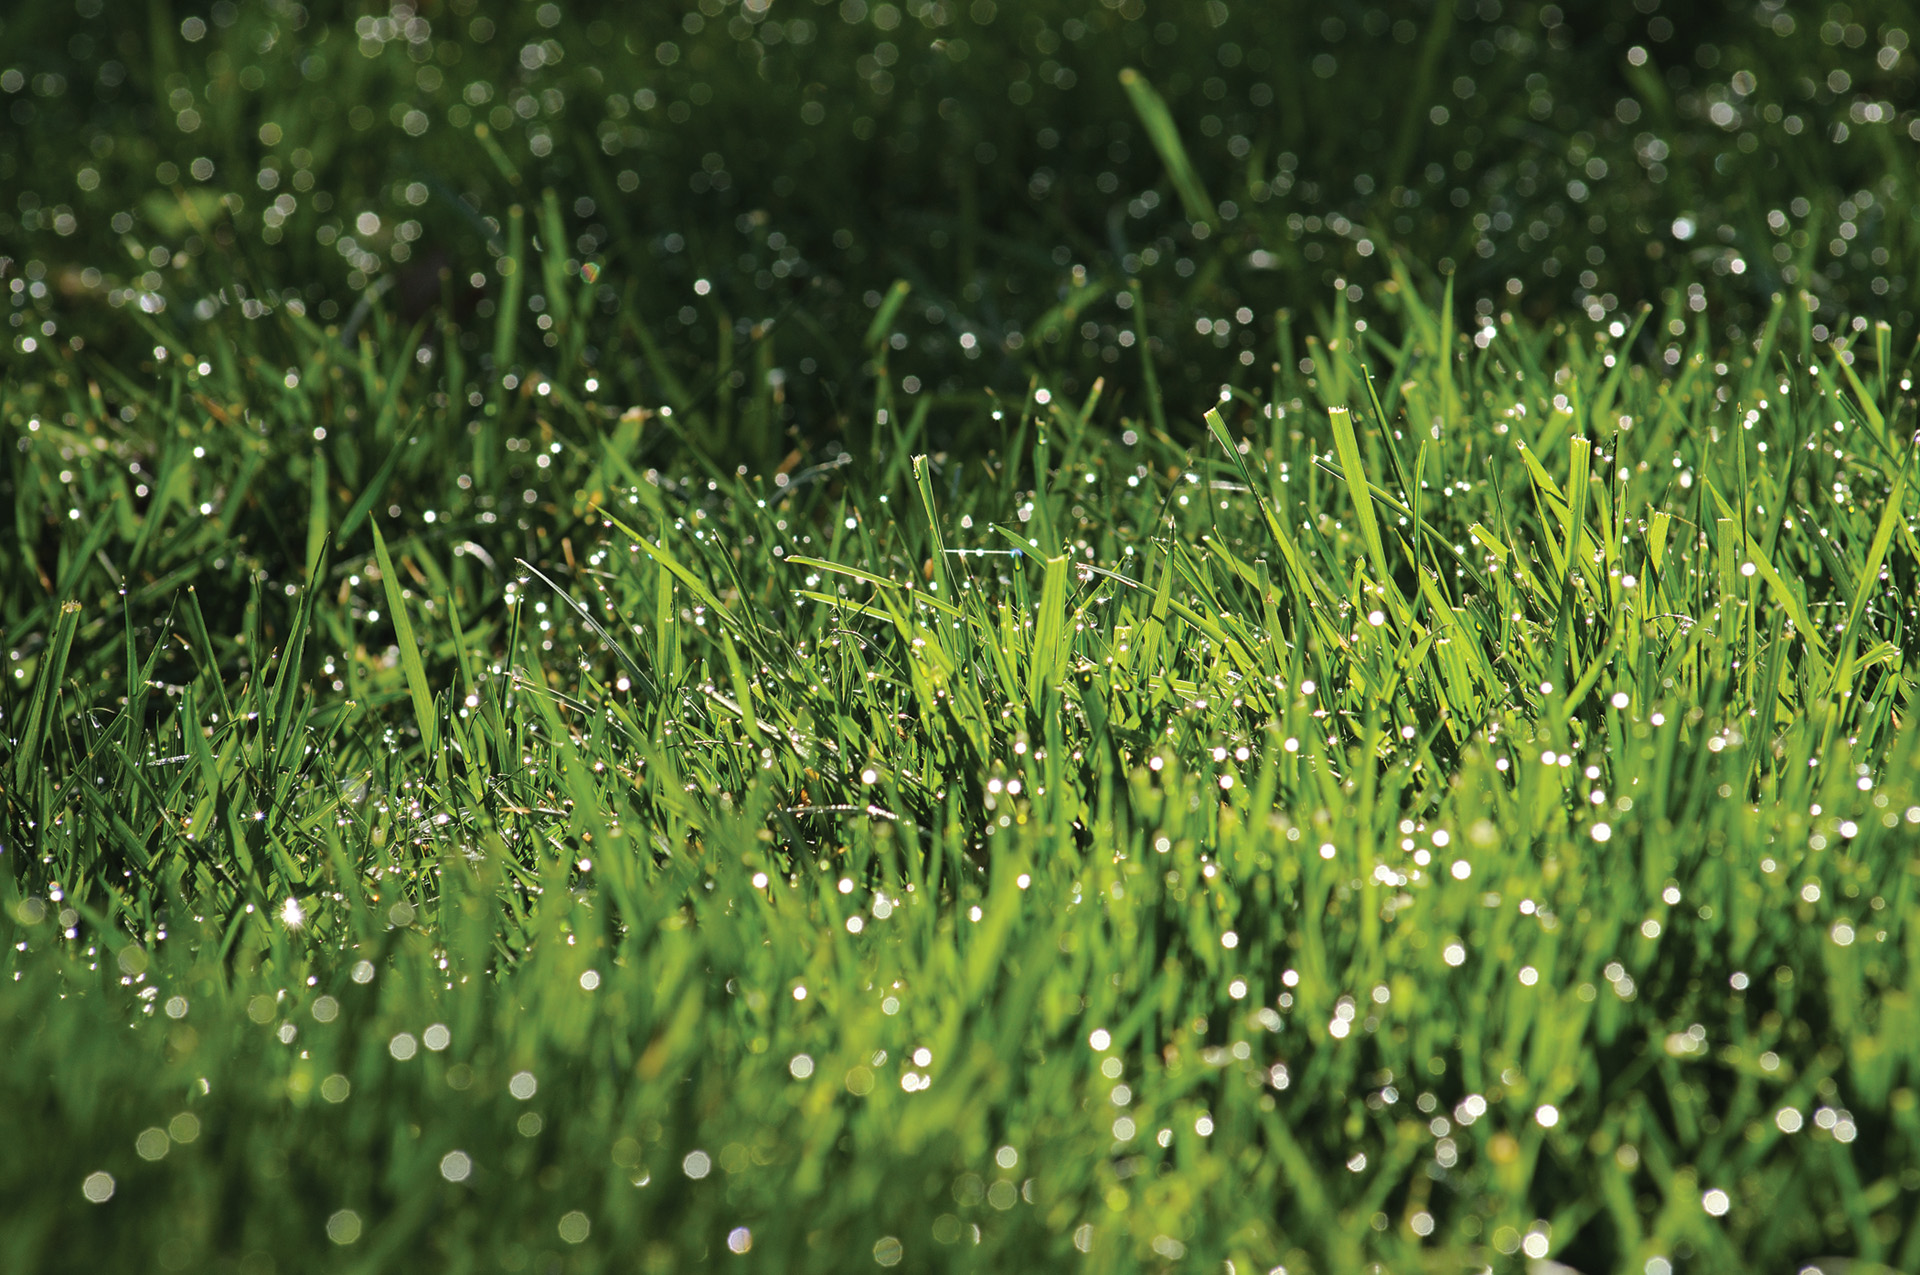 Primer plano de una hierba sana con rocío libre de plagas y enfermedades propias del césped.